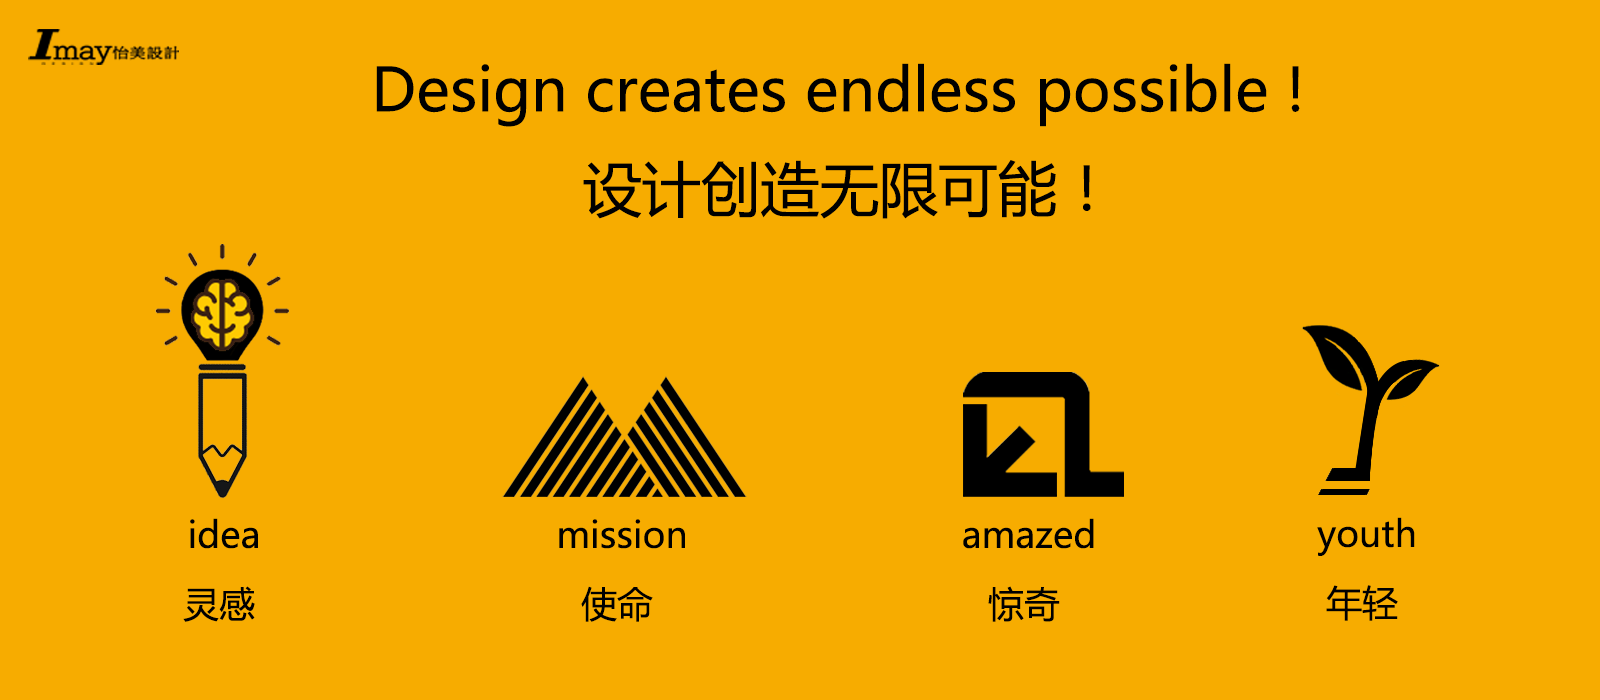 深圳工业设计产品设计公司;怡美工业设计